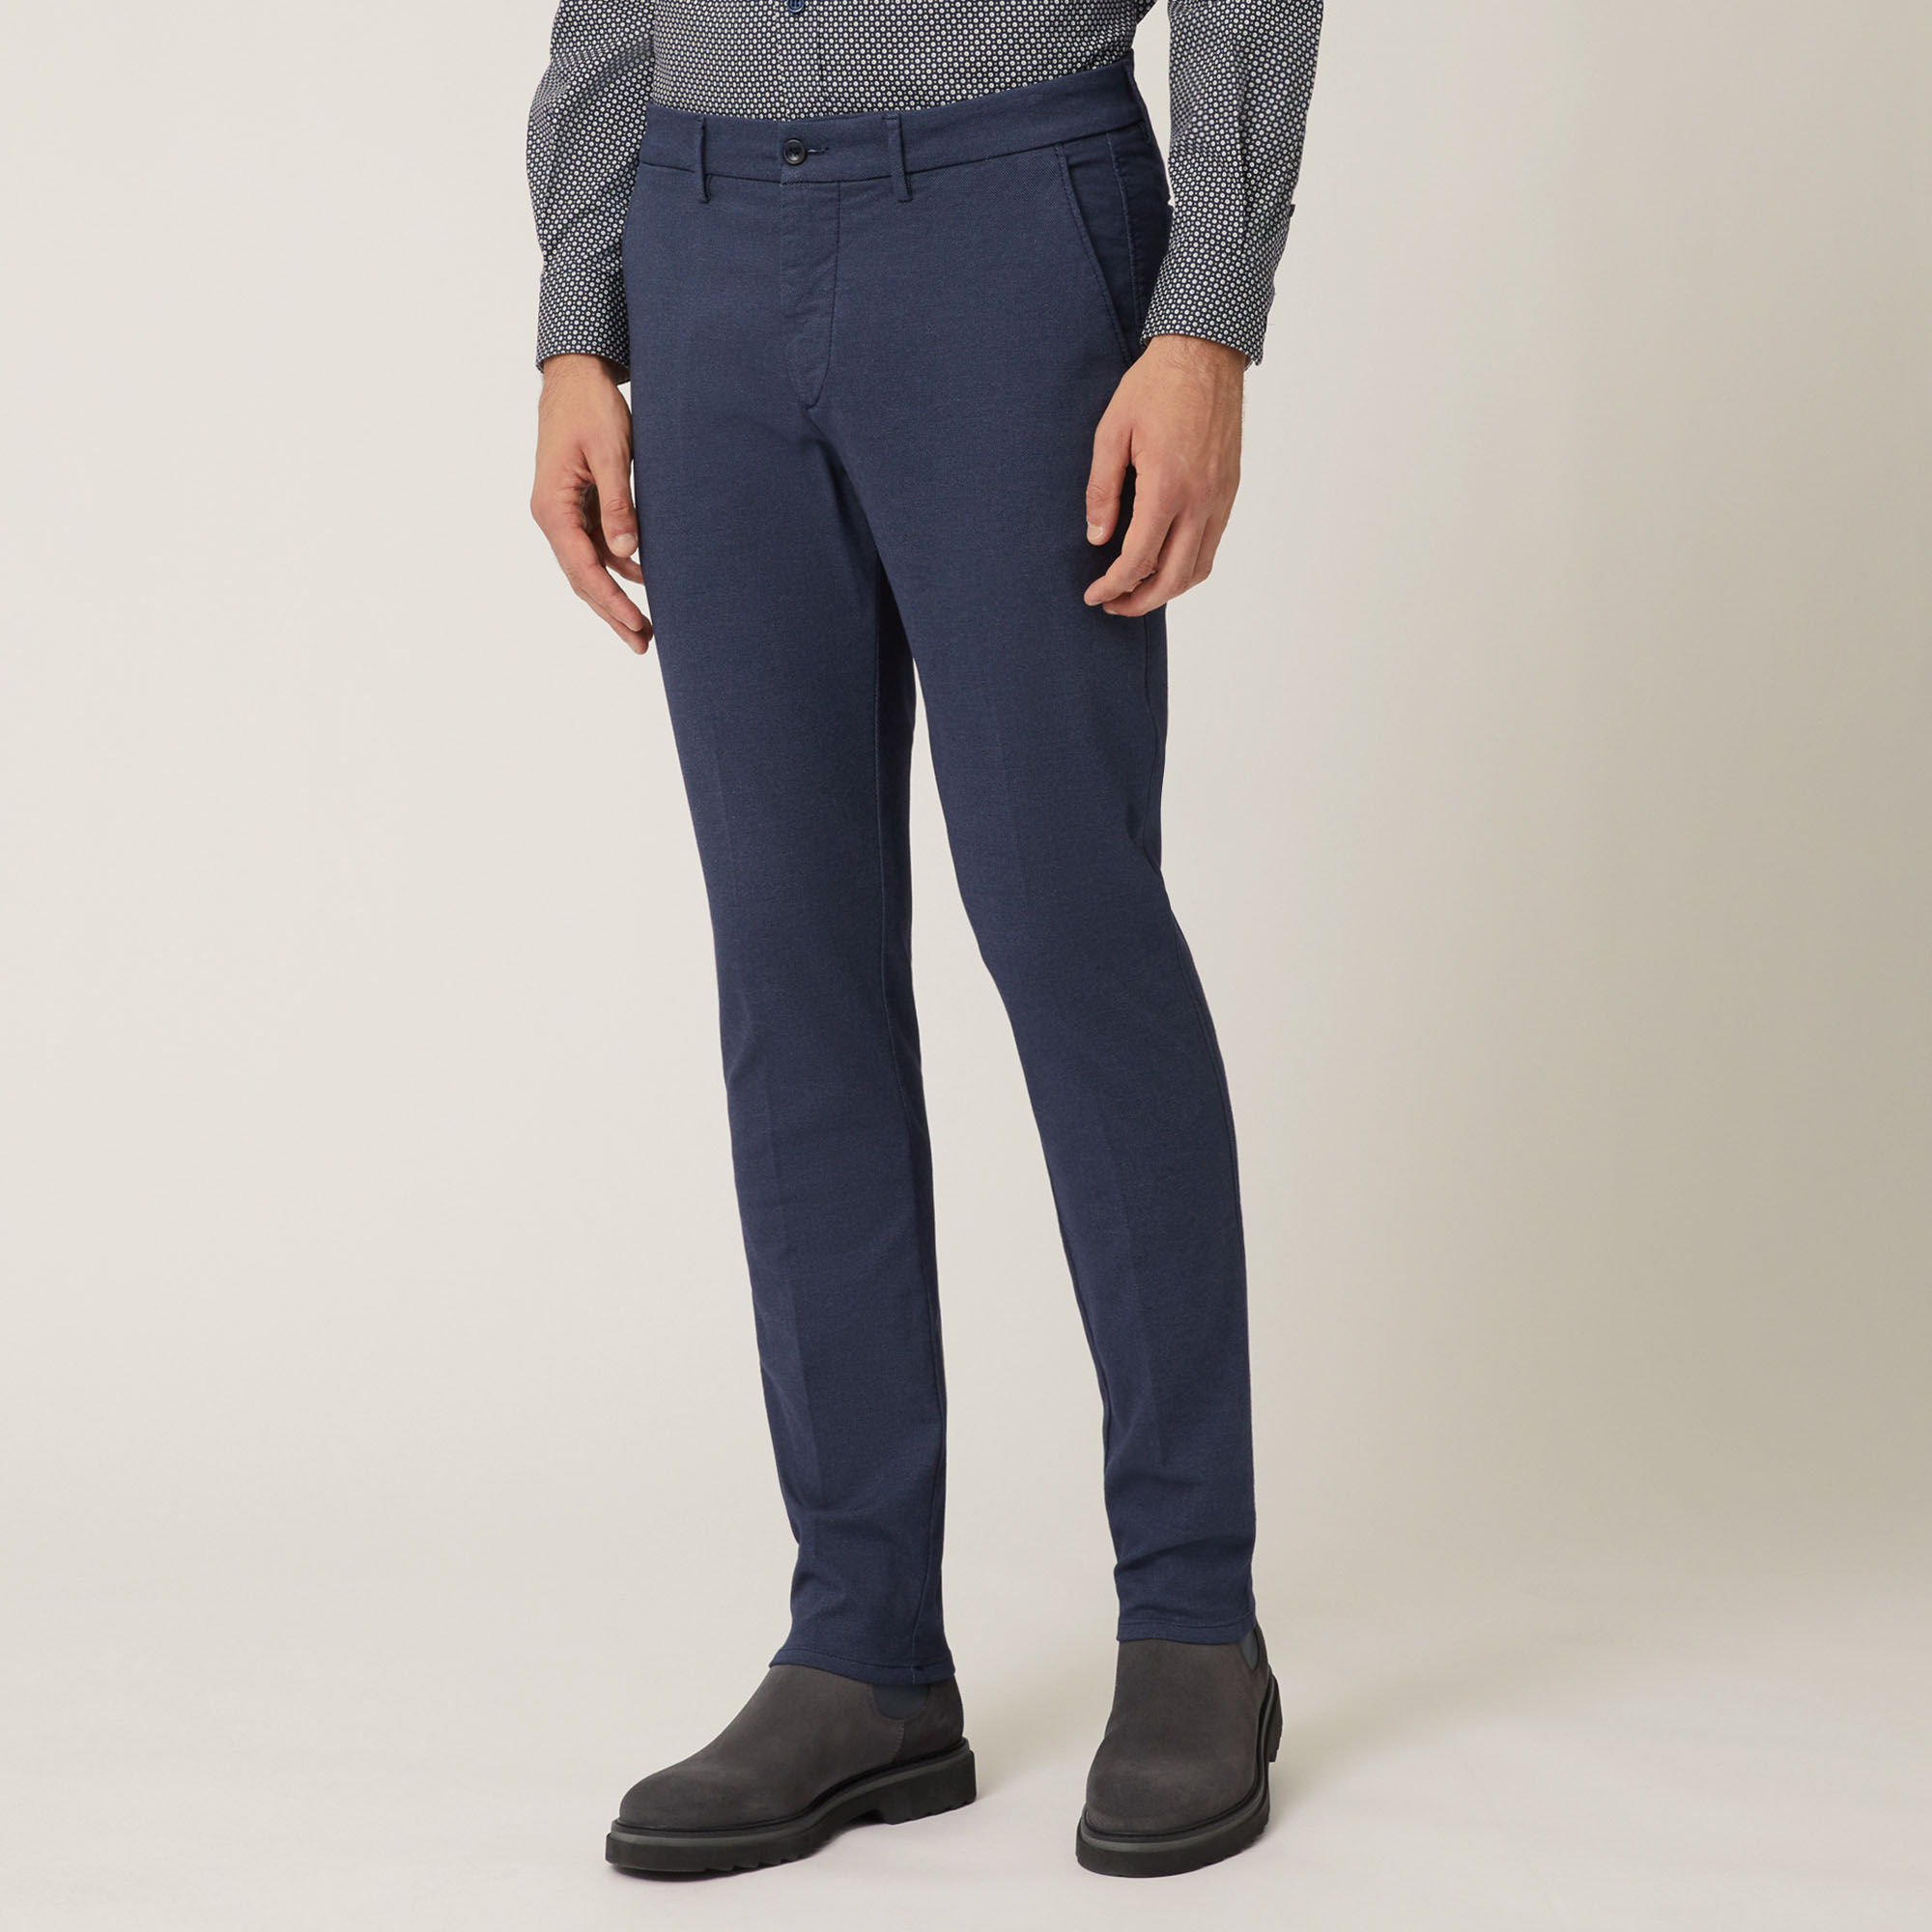 Pantalone Chino Narrow Fit In Tessuto Coolmax, Blu Navy, large